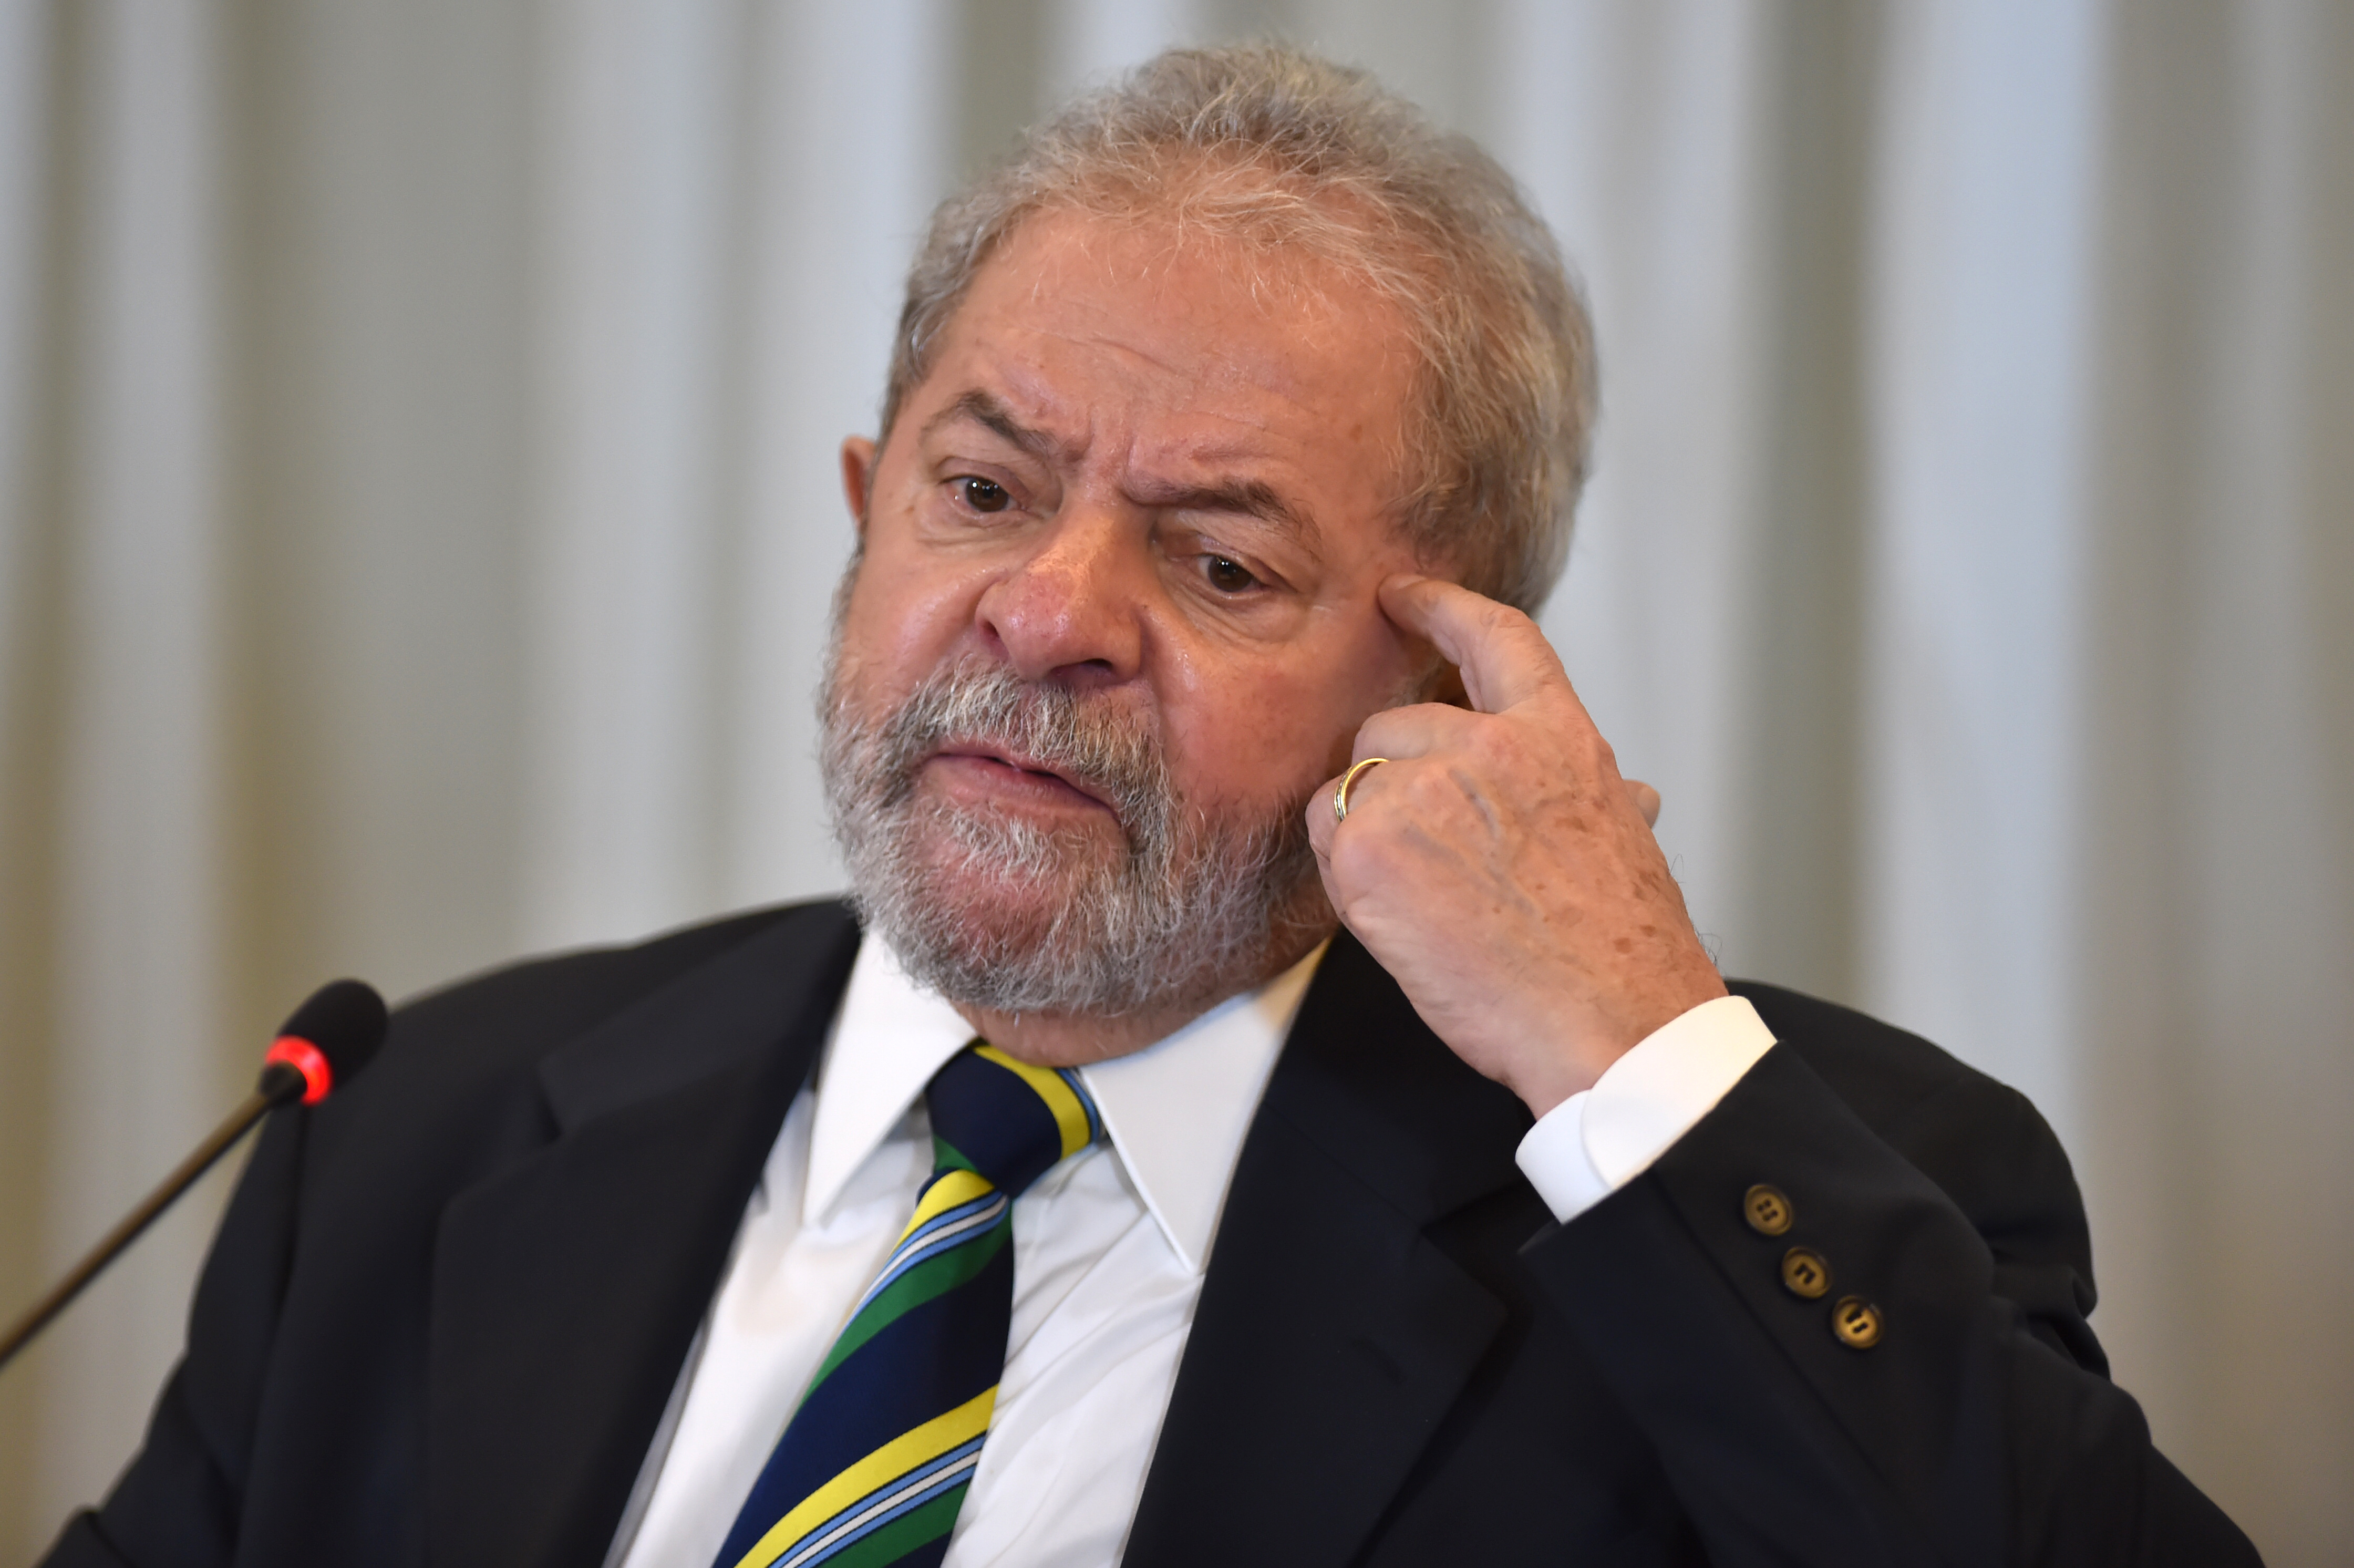 Brasil es “gobernado por una banda de locos”, dice Lula da Silva desde prisión